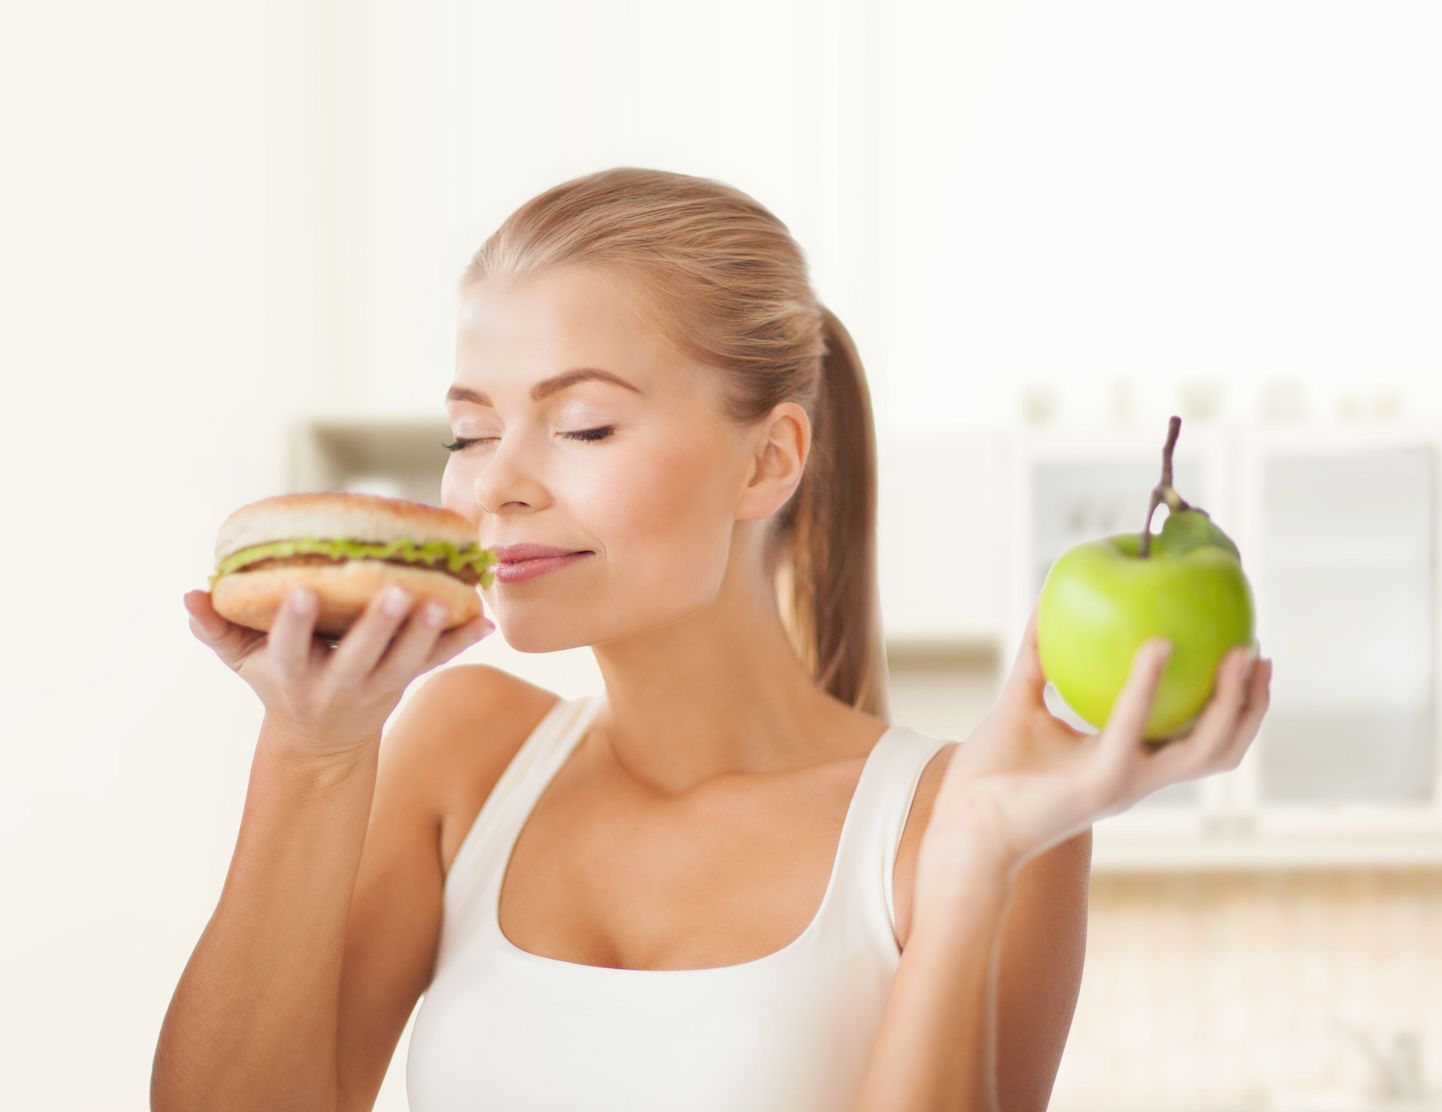 Kui burgerid võivad tekitada sõltuvust, siis õunte söömine on tunduvalt tervislikum.